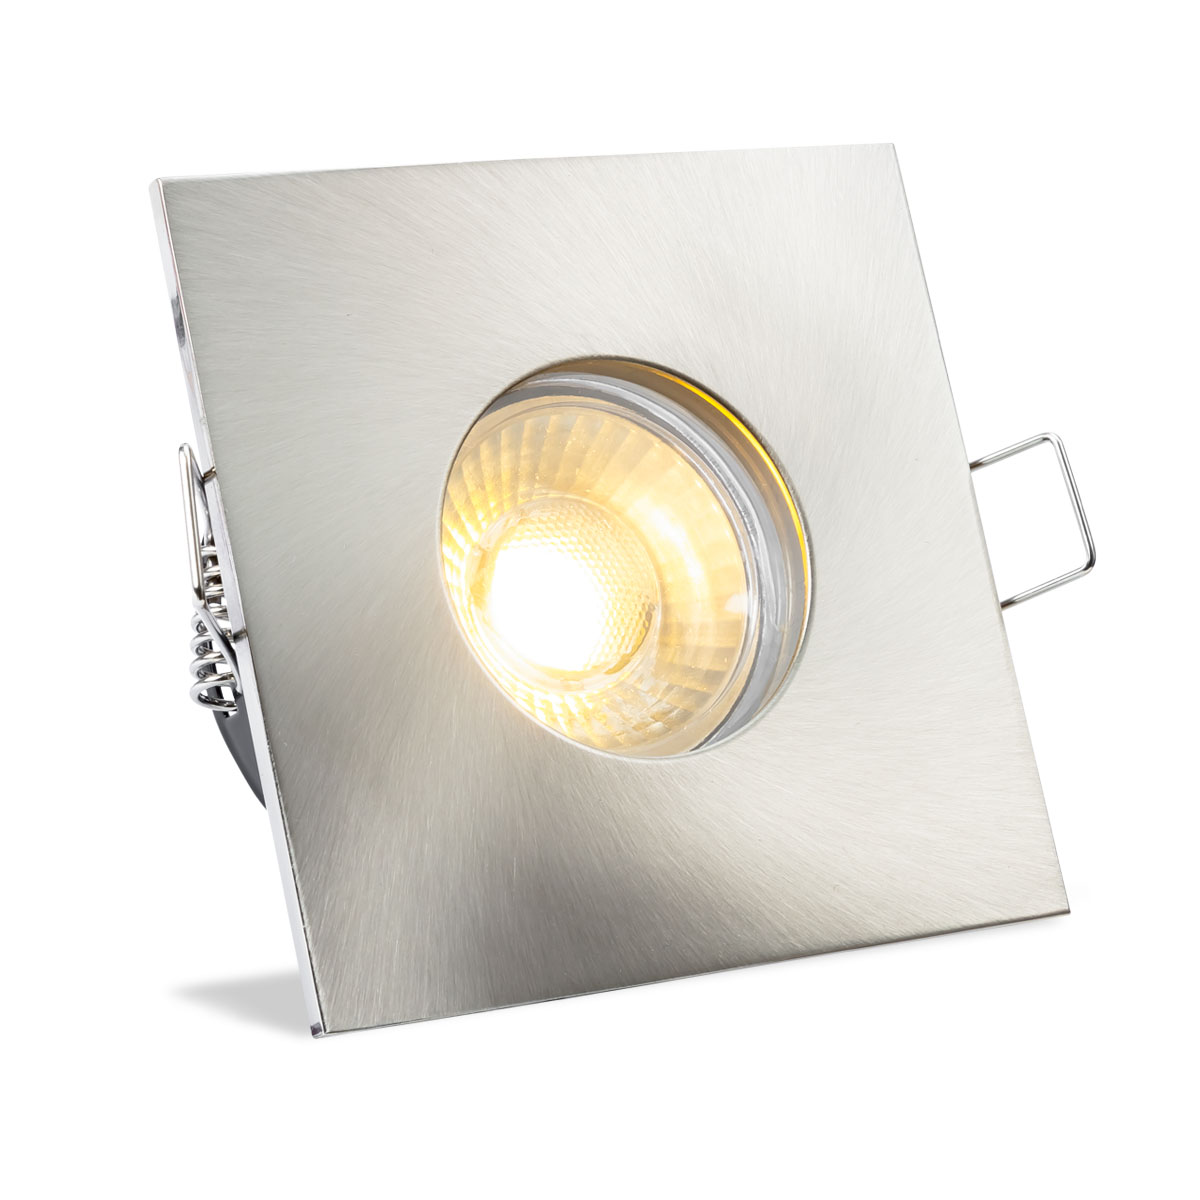 Einbauspot IP65 eckig - Abdeckring:  Edelstahl - LED Leuchtmittel:  GU10 5W warmweiß